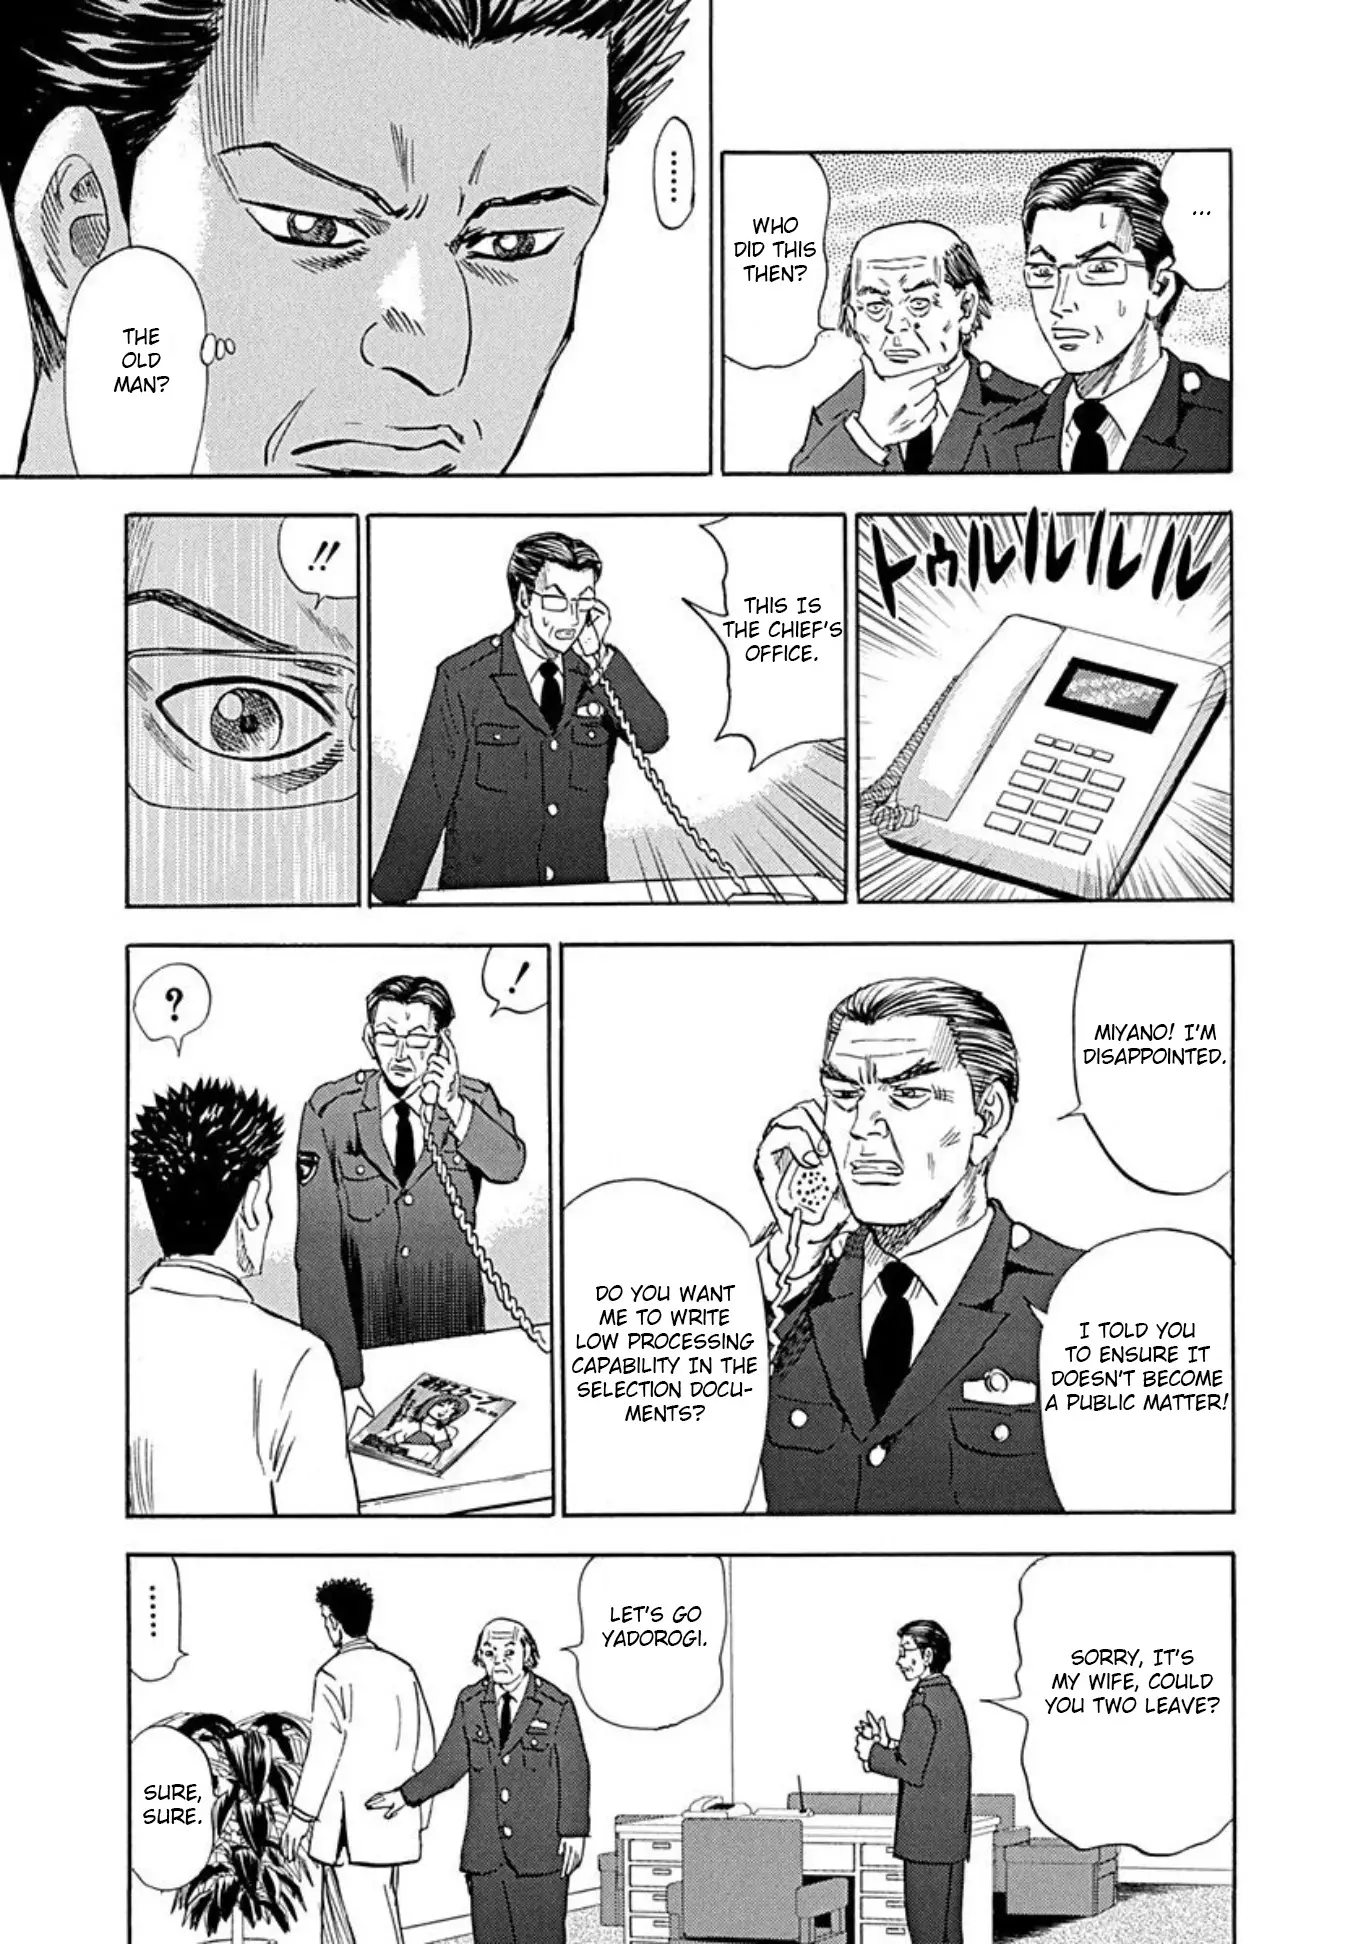 Uramiya Honpo - 72 page 17-86cf0ae8